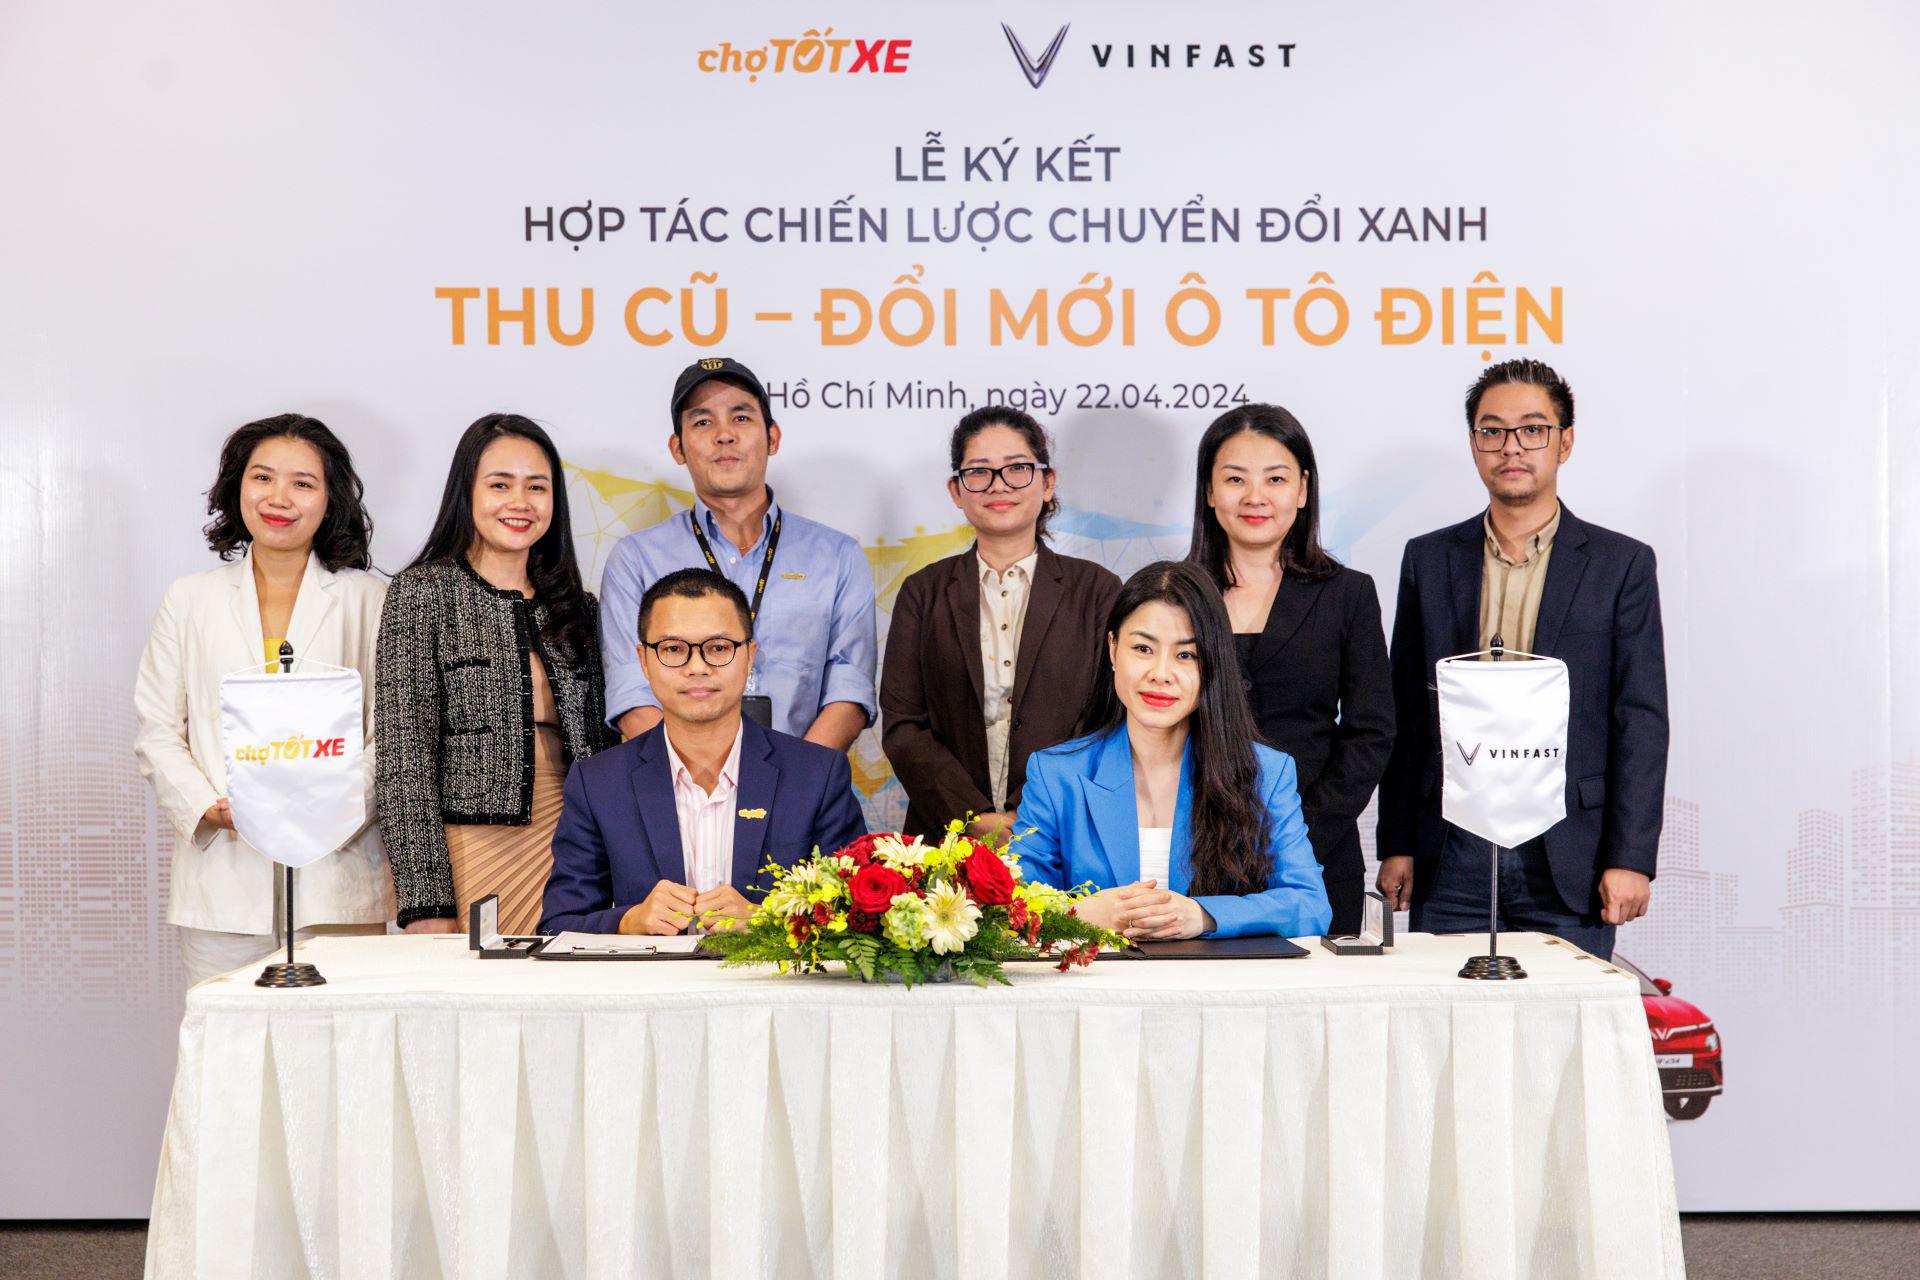 Bà Dương Thị Thu Trang - Tổng giám đốc VinFast Thị trường Việt Nam và ông Nguyễn Trọng Tấn - Tổng giám đốc Chợ Tốt, cùng đại diện hai công ty tại lễ ký kết&nbsp;hợp tác.